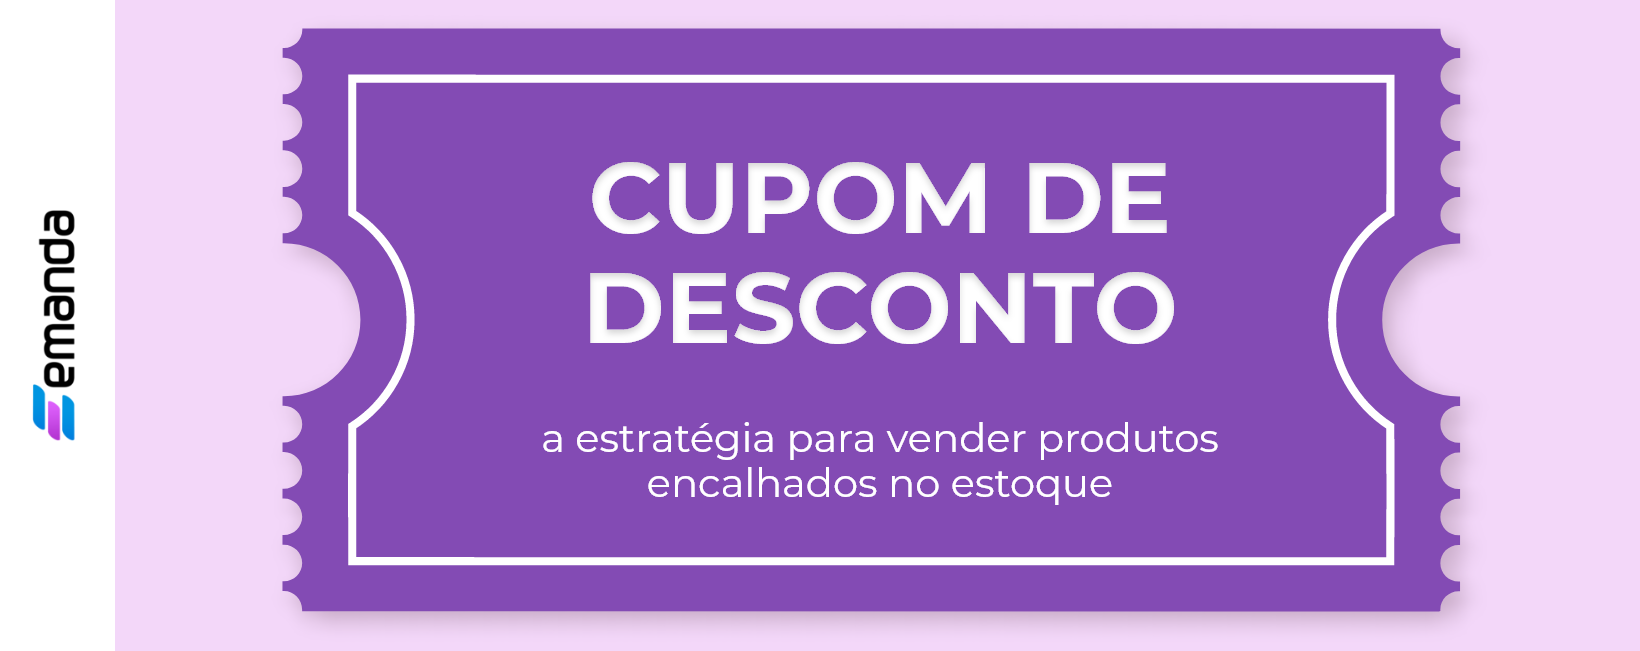 You are currently viewing Cupom de desconto, a estratégia para vender produtos encalhados no estoque